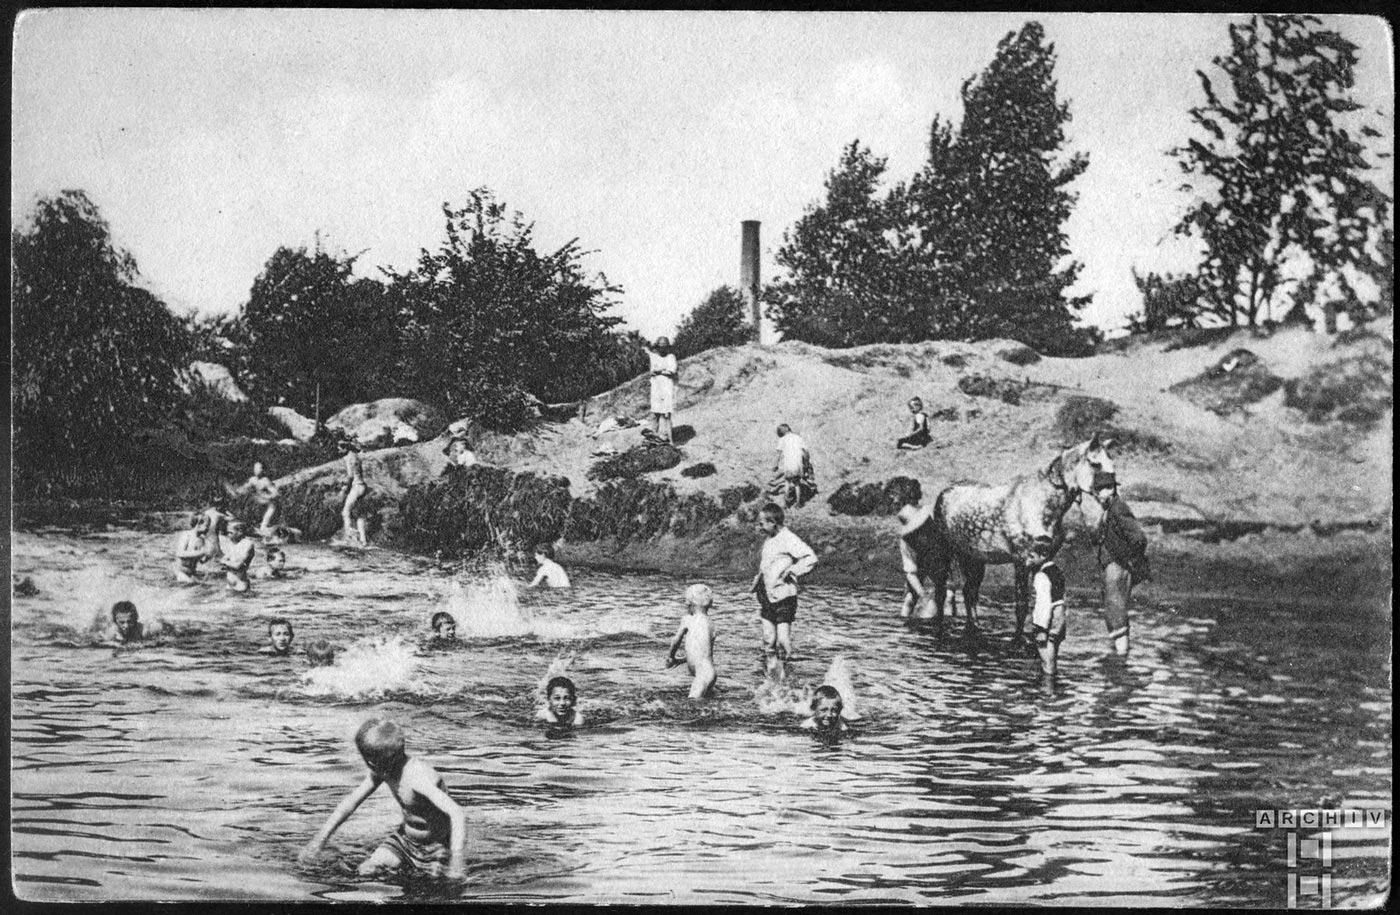 Wasserkühlung (Охлаждение в воде), 1910s